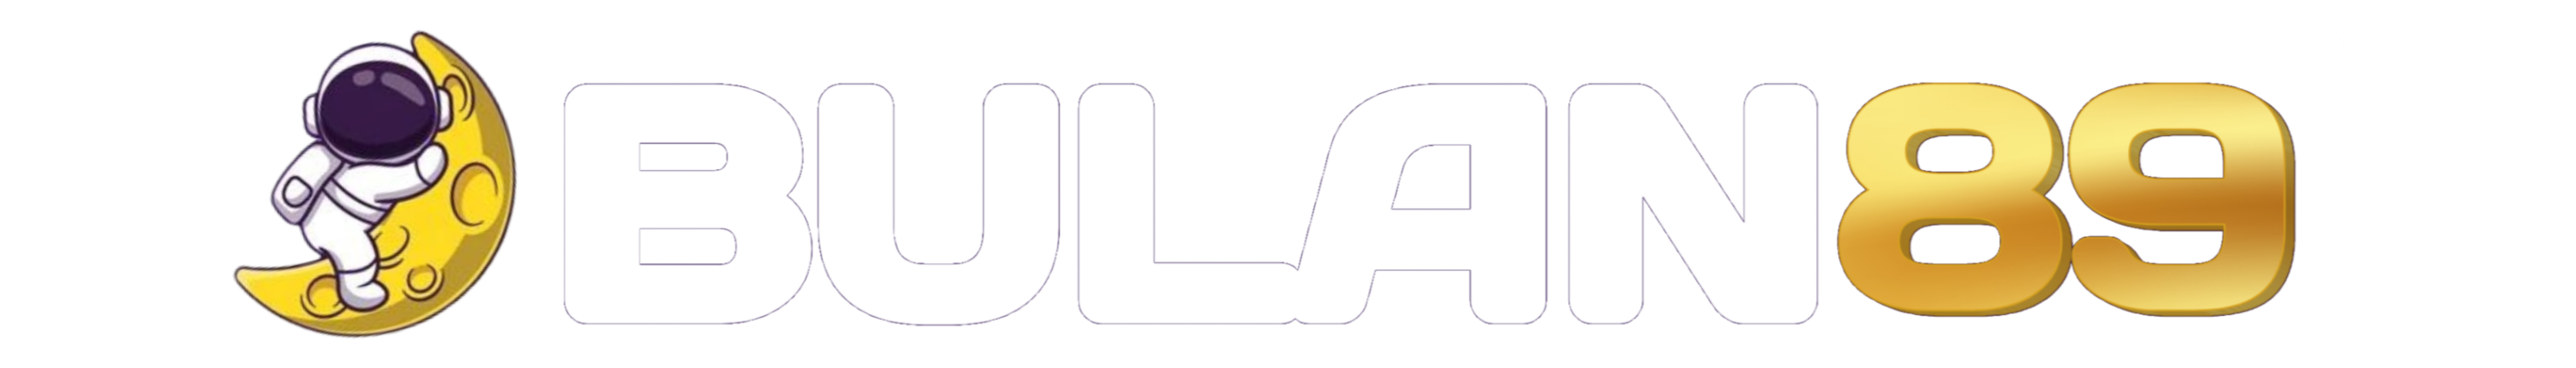 logo baru bulan89